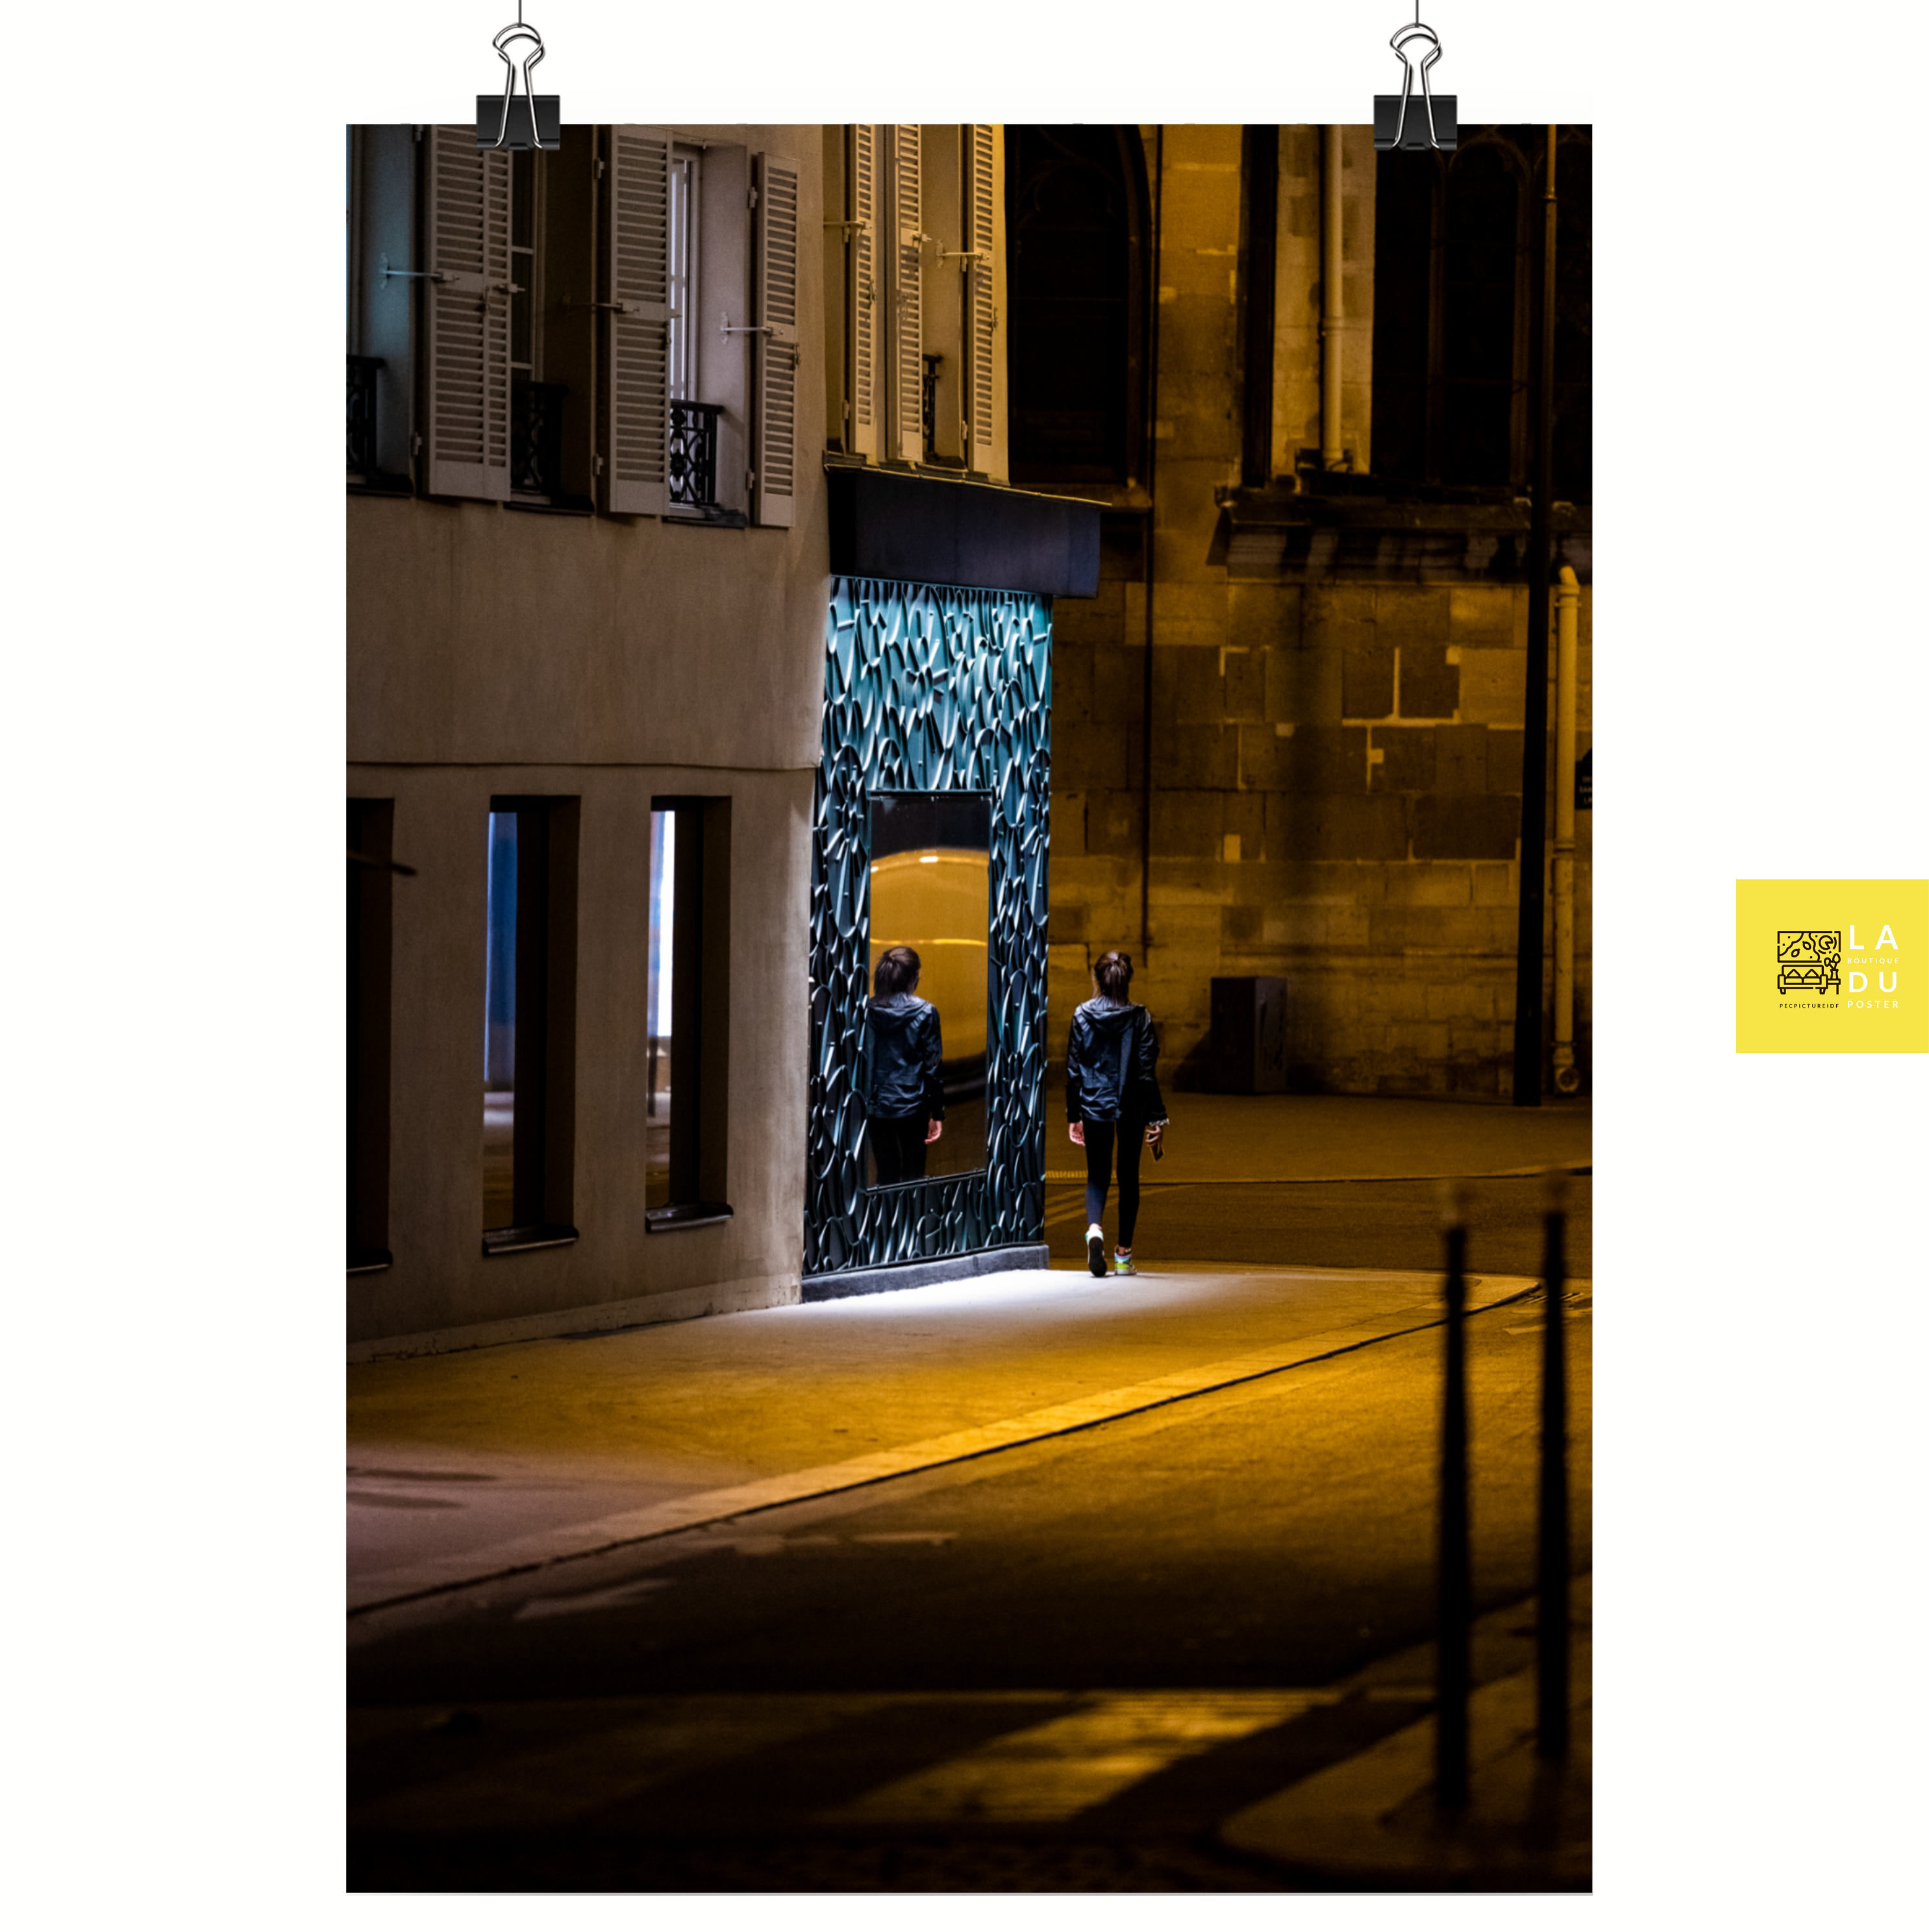 Poster mural - Miroir miroir – Photographie de rue la nuit – Poster photo, poster XXL, photographie murale et des posters muraux unique au monde. La boutique de posters créée par Yann Peccard un Photographe français.